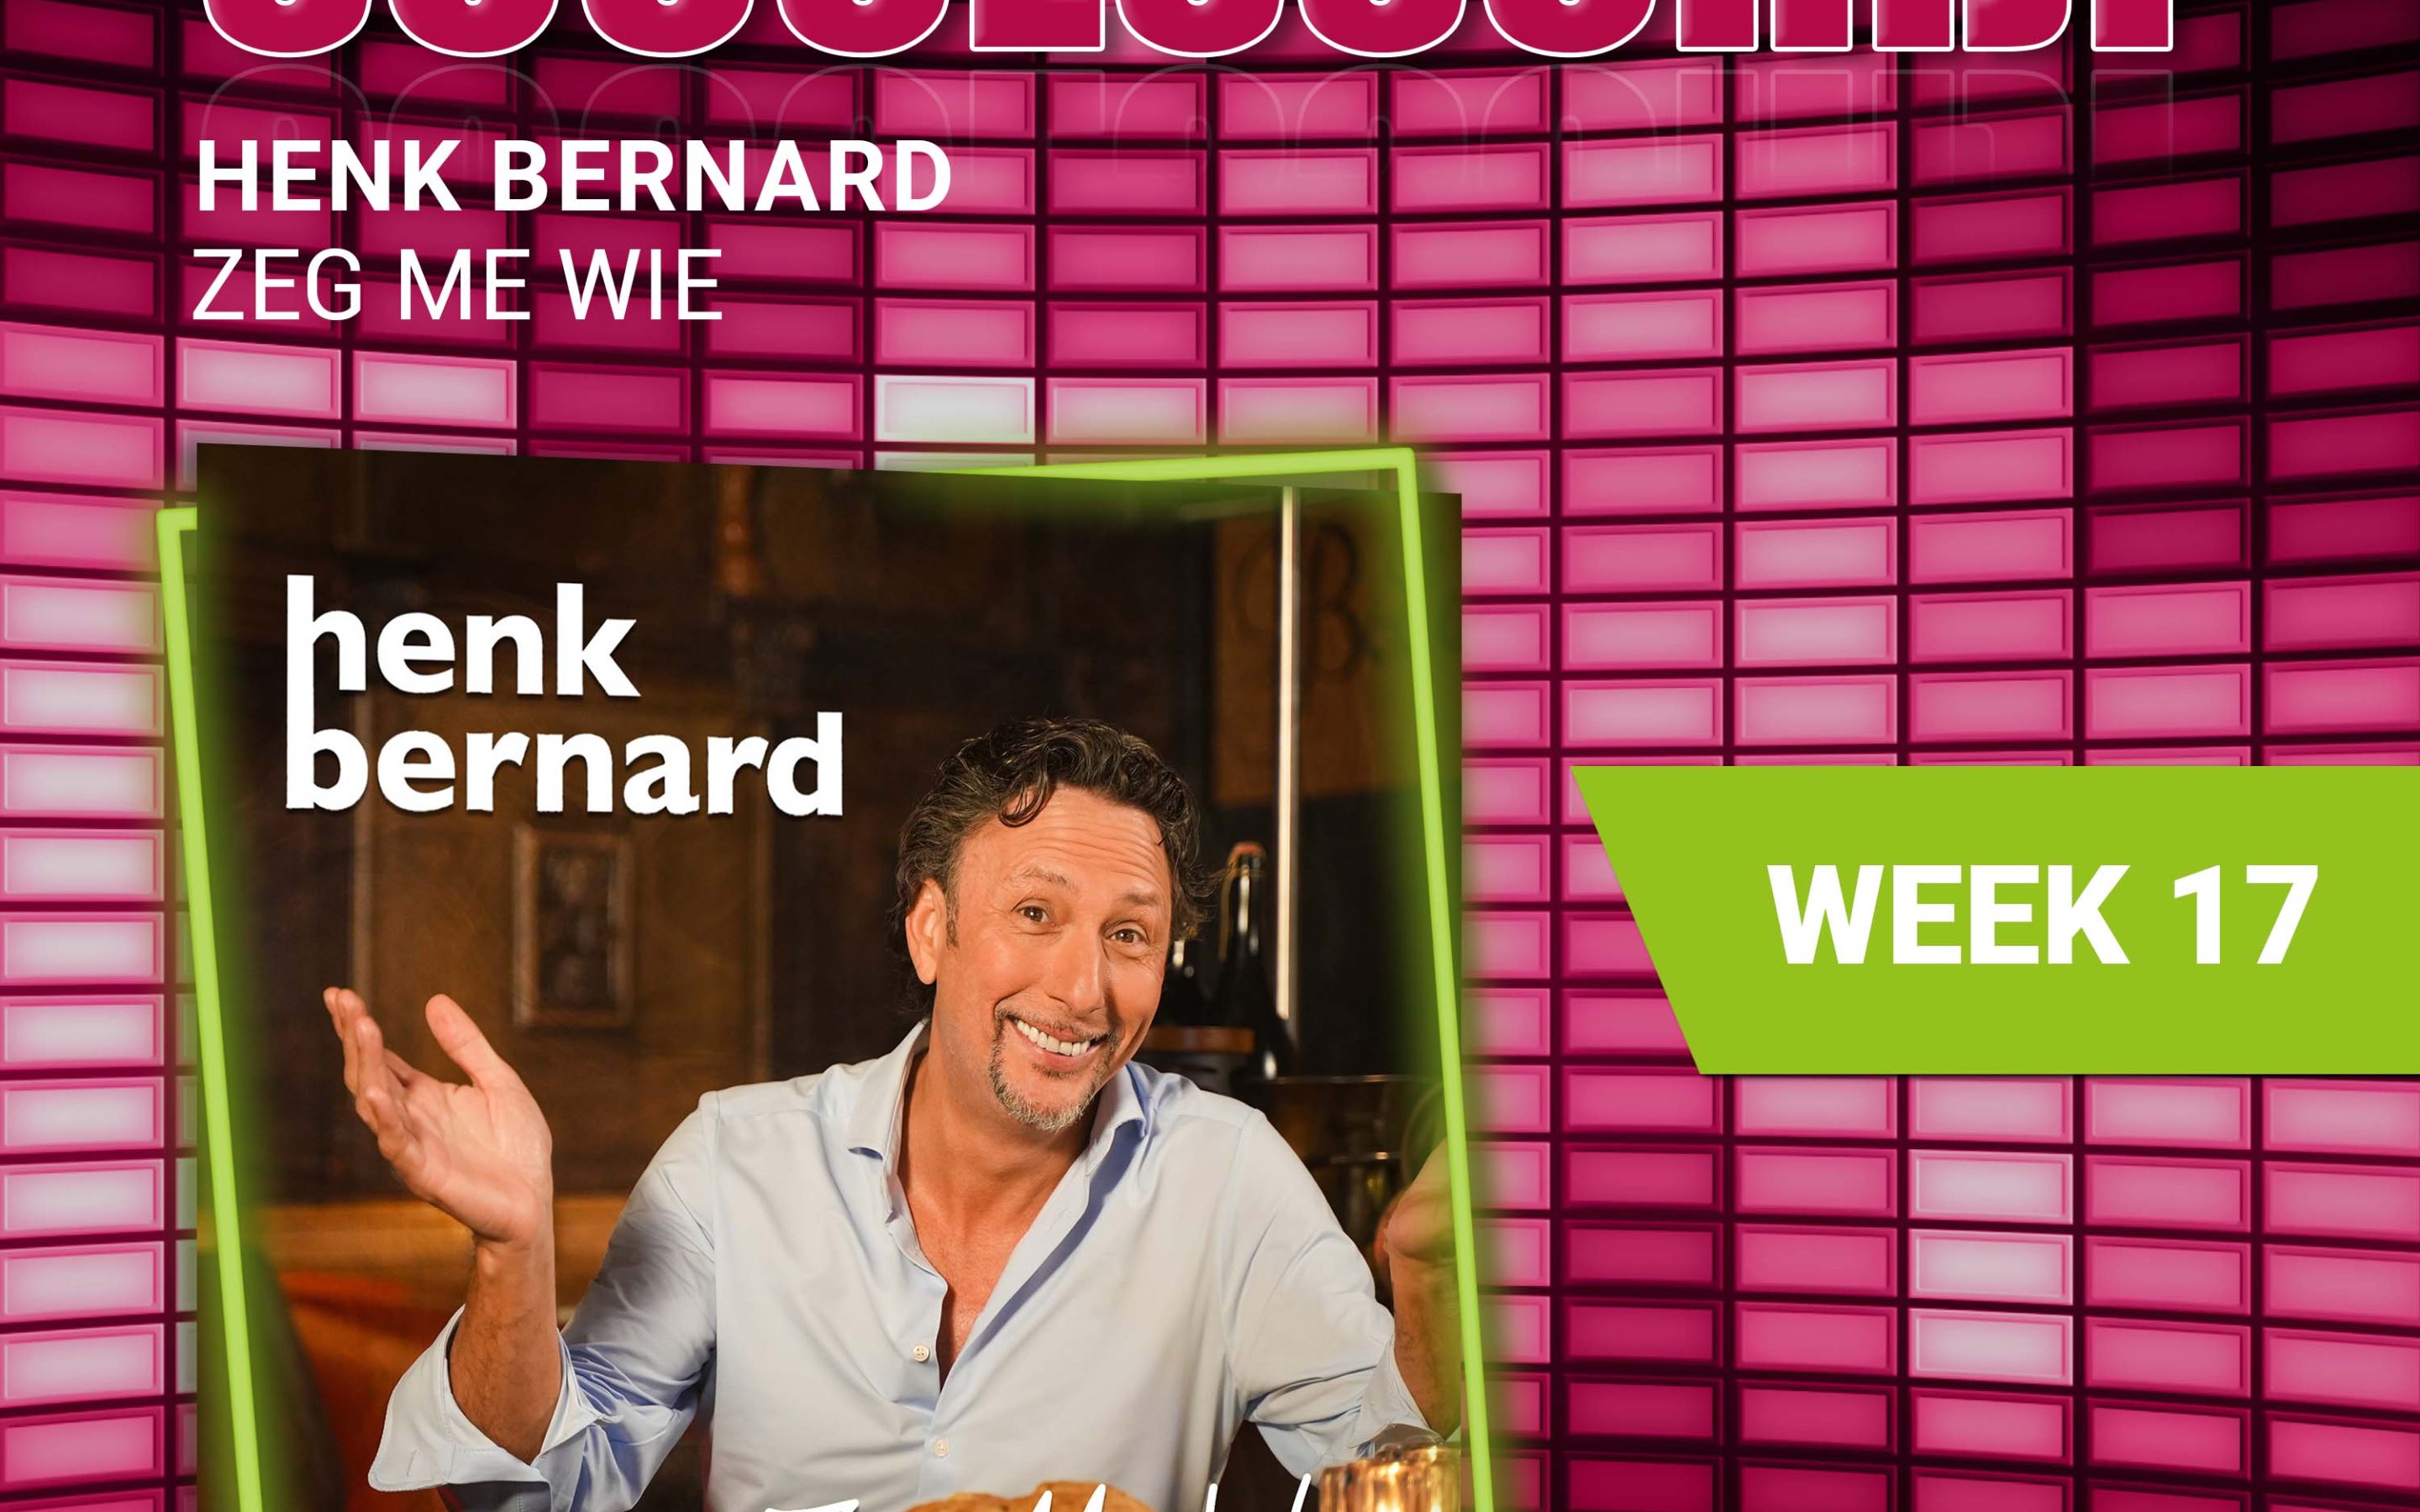 Henk Bernard – nieuwe successchijf week 17